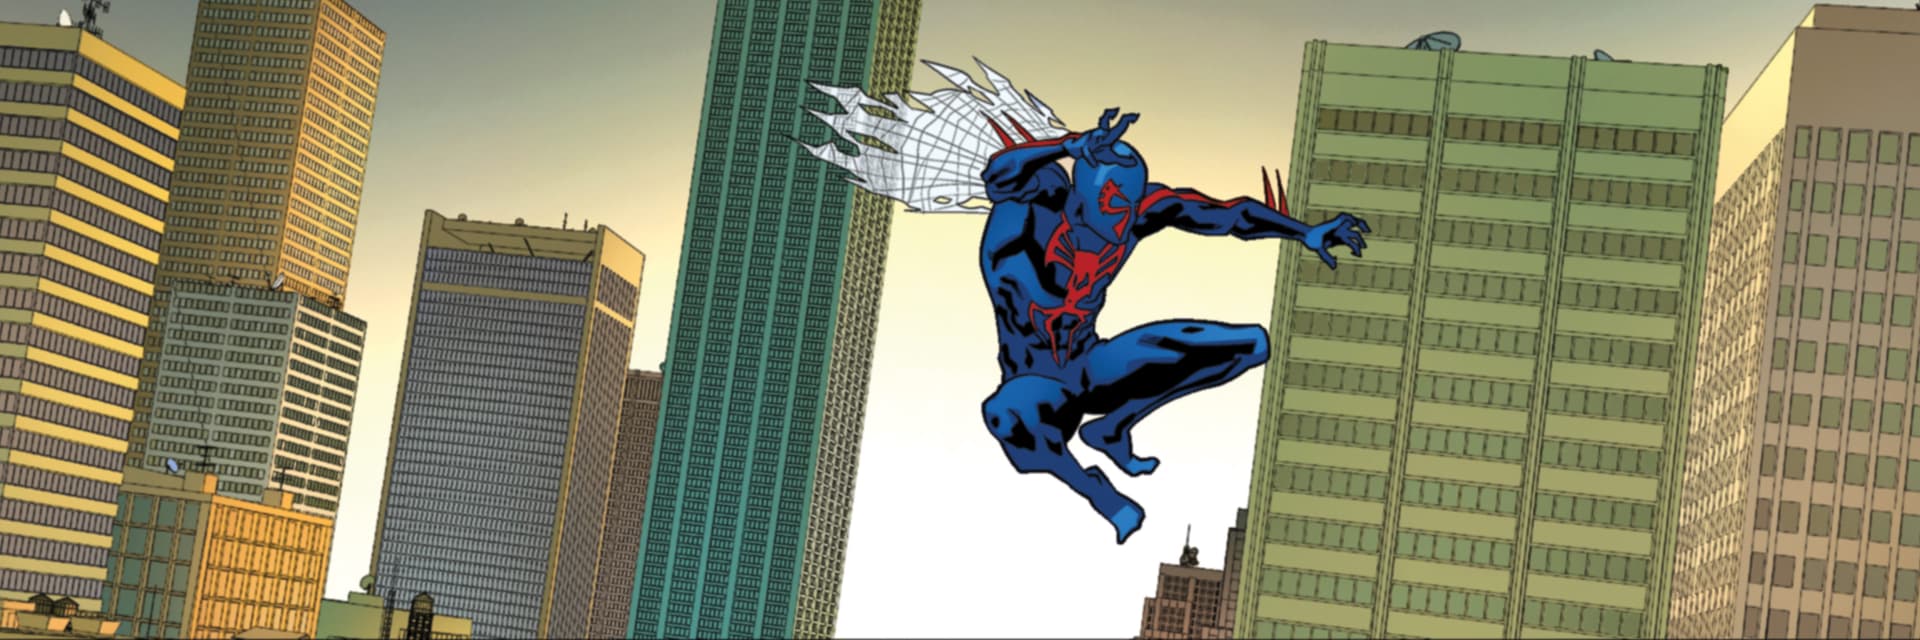 Spider-Man 2099 (Miguel O'Hara)